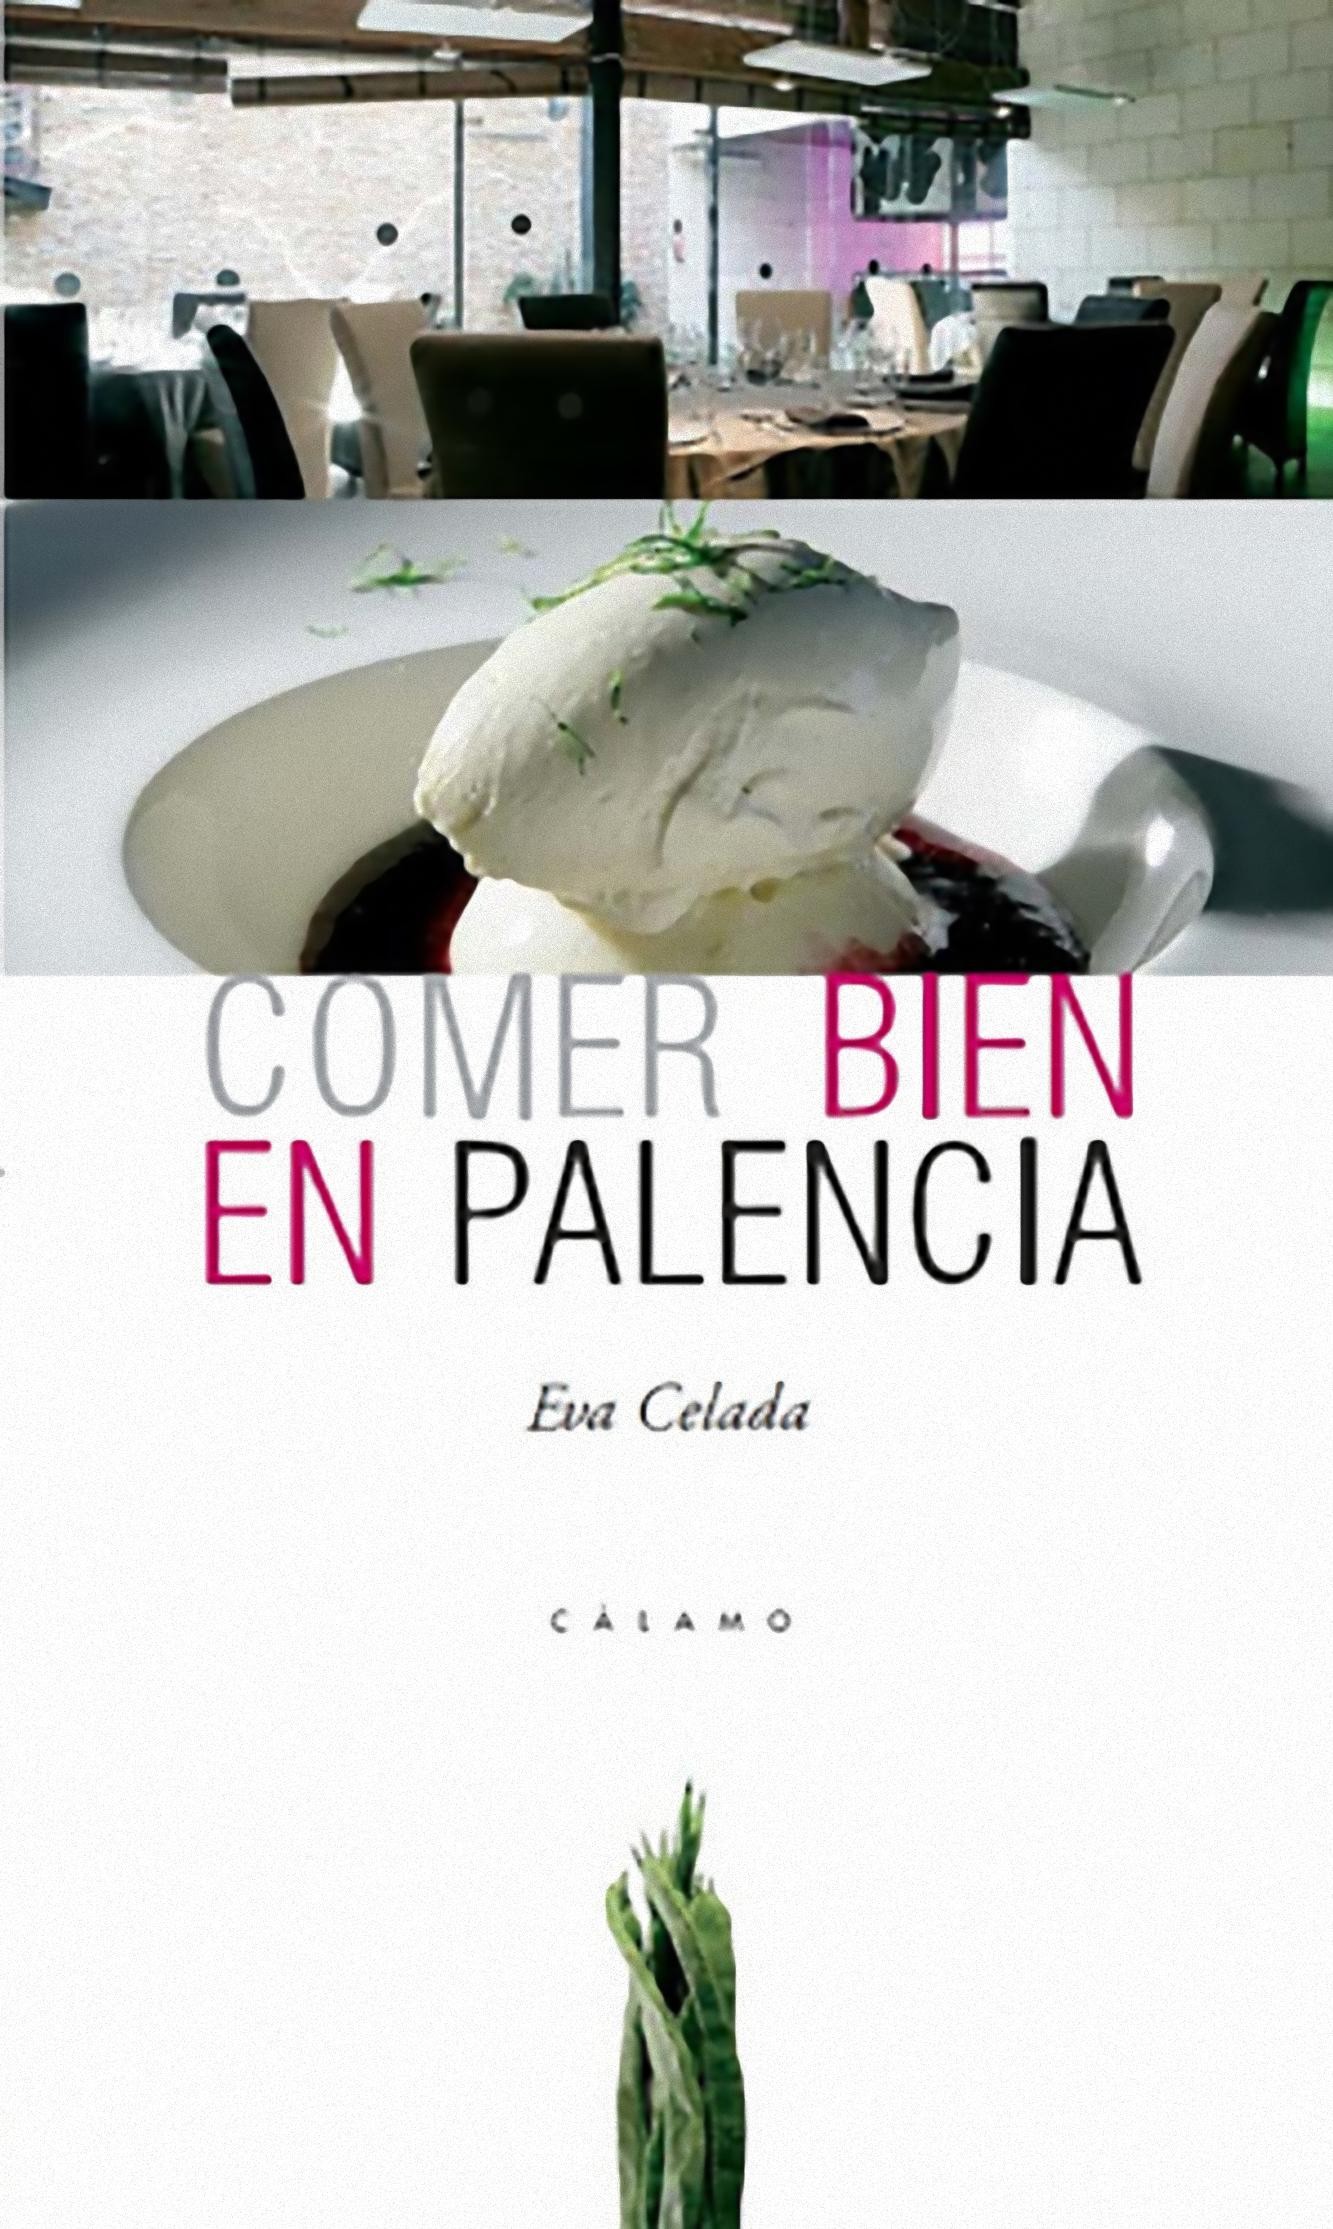 "Comer bien en Palencia"